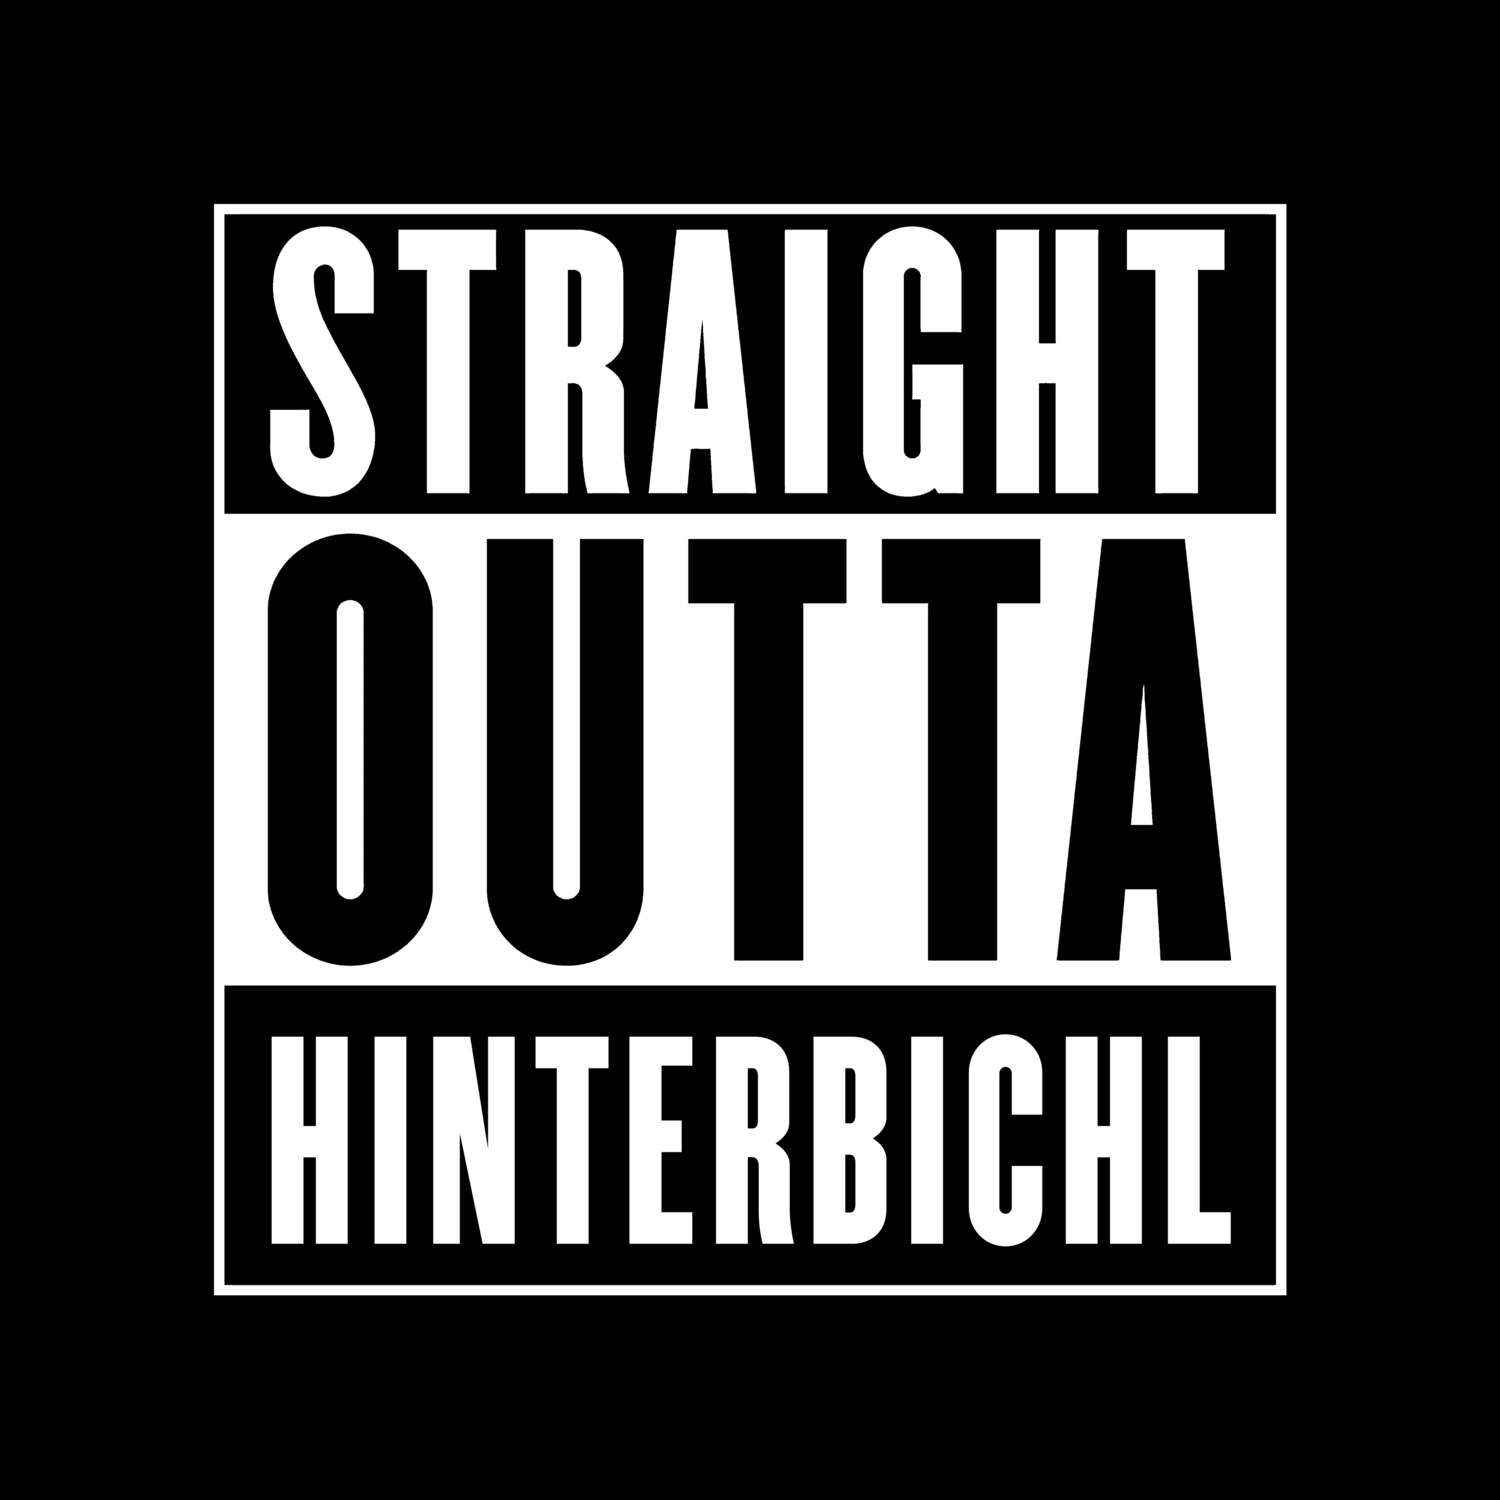 Hinterbichl T-Shirt »Straight Outta«